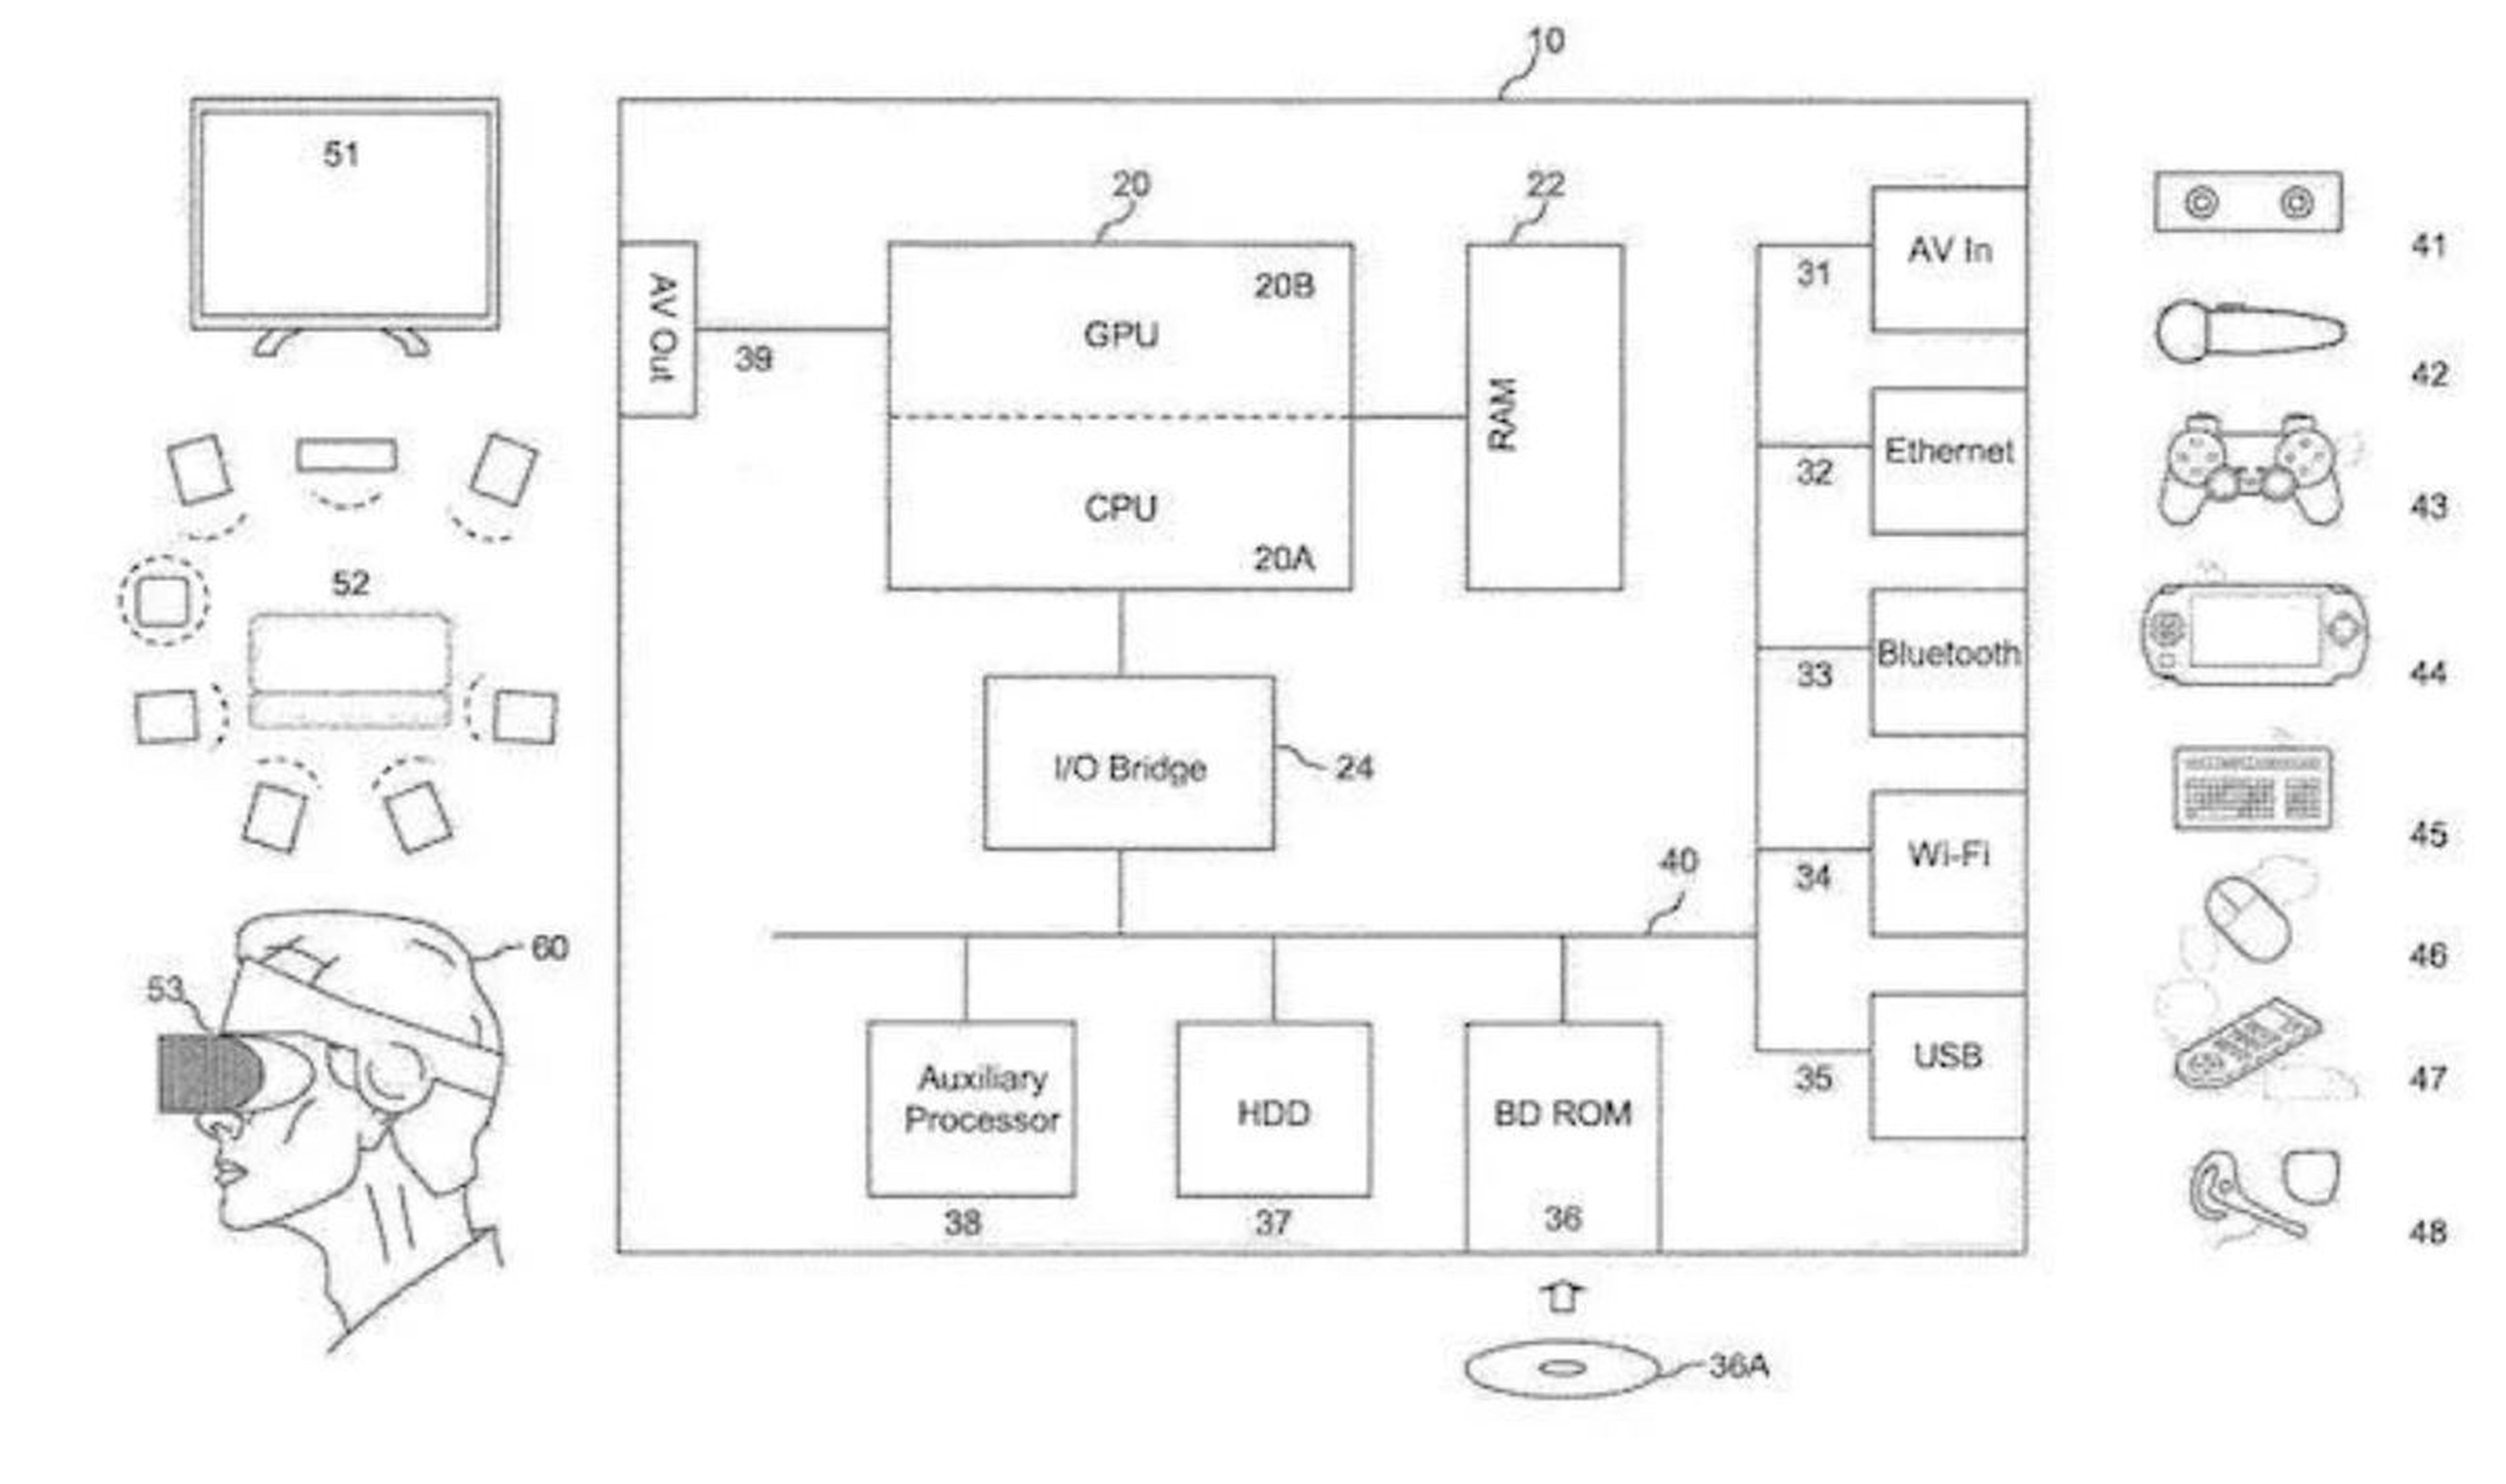 Patente Sony que refleja compatibilidad de PSP y PS Vita con PS5